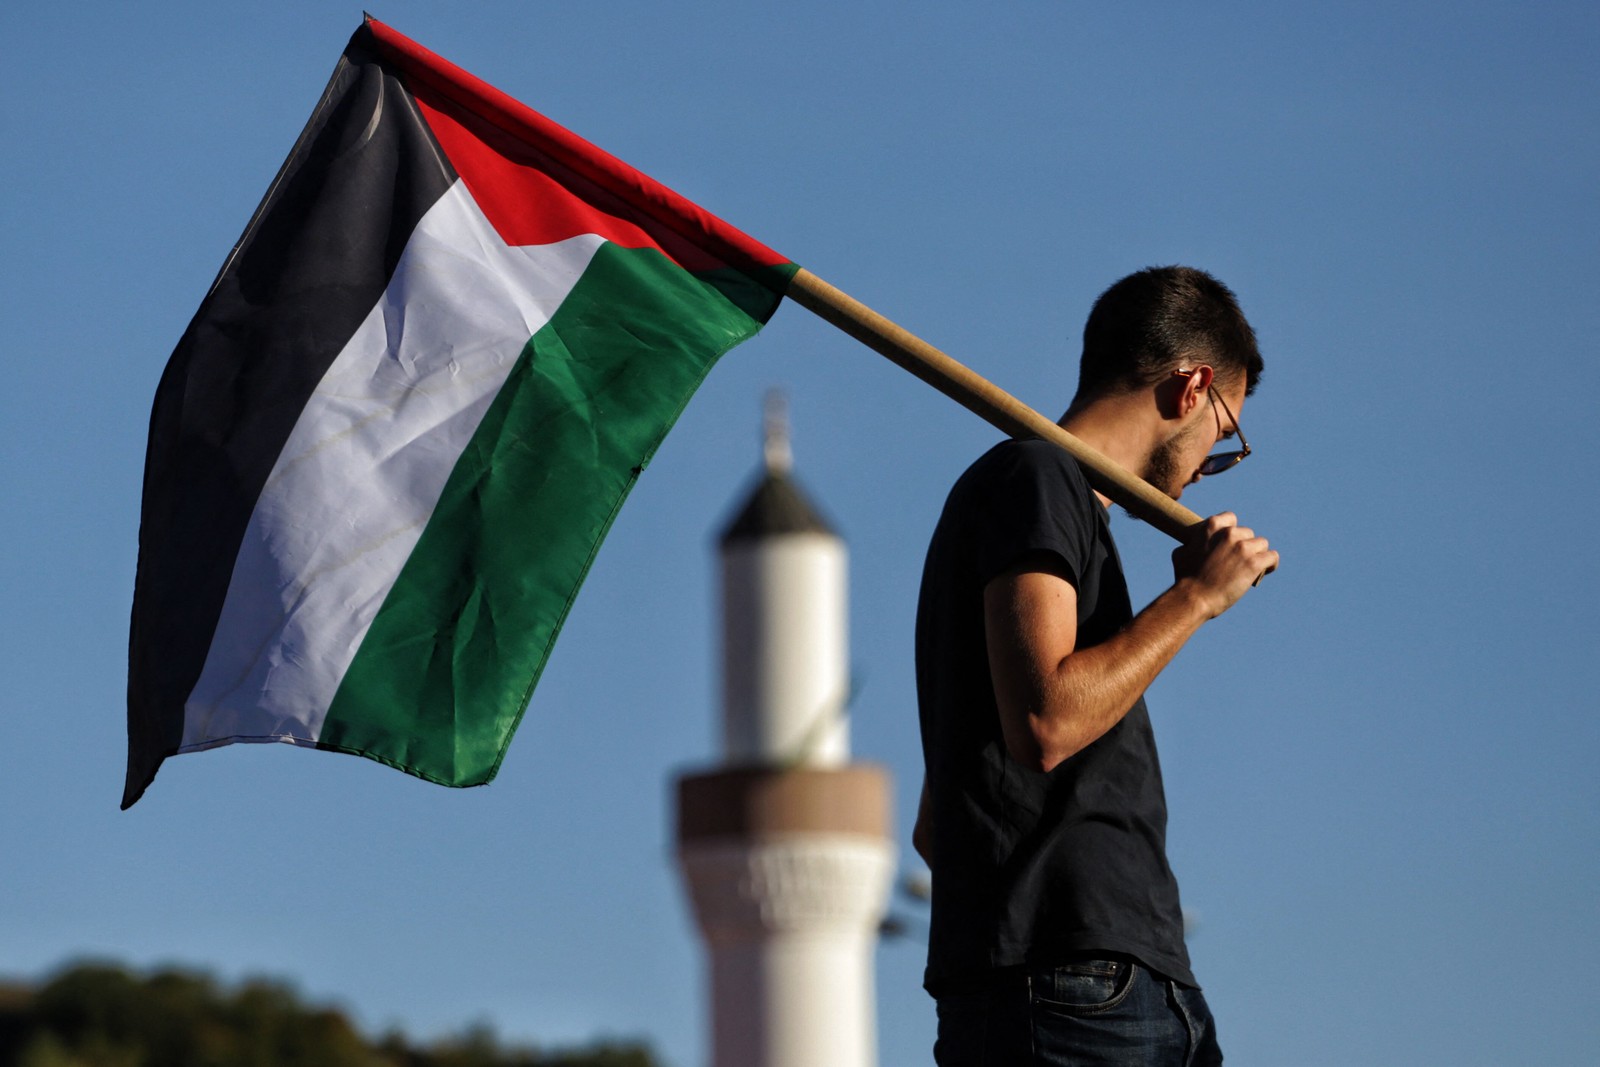 Protestante pró-Palestina segura bandeira durante manifestação na Sérvia — Foto: Irfan Licina/AFP